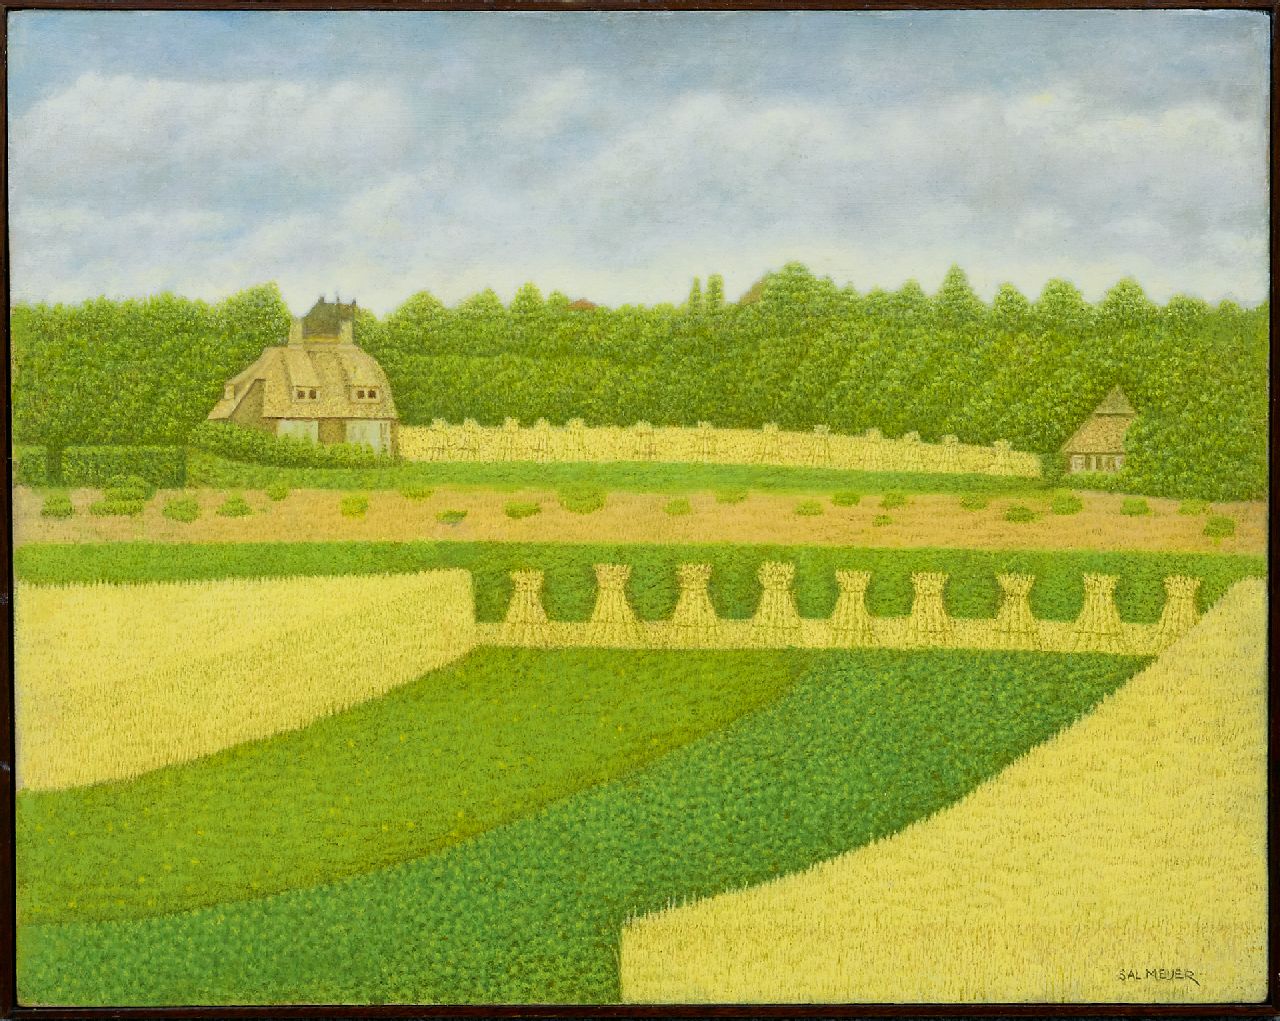 Meijer S.  | Salomon 'Sal' Meijer | Schilderijen te koop aangeboden | Landhuis bij Blaricum, olieverf op paneel 40,0 x 49,9 cm, gesigneerd rechtsonder